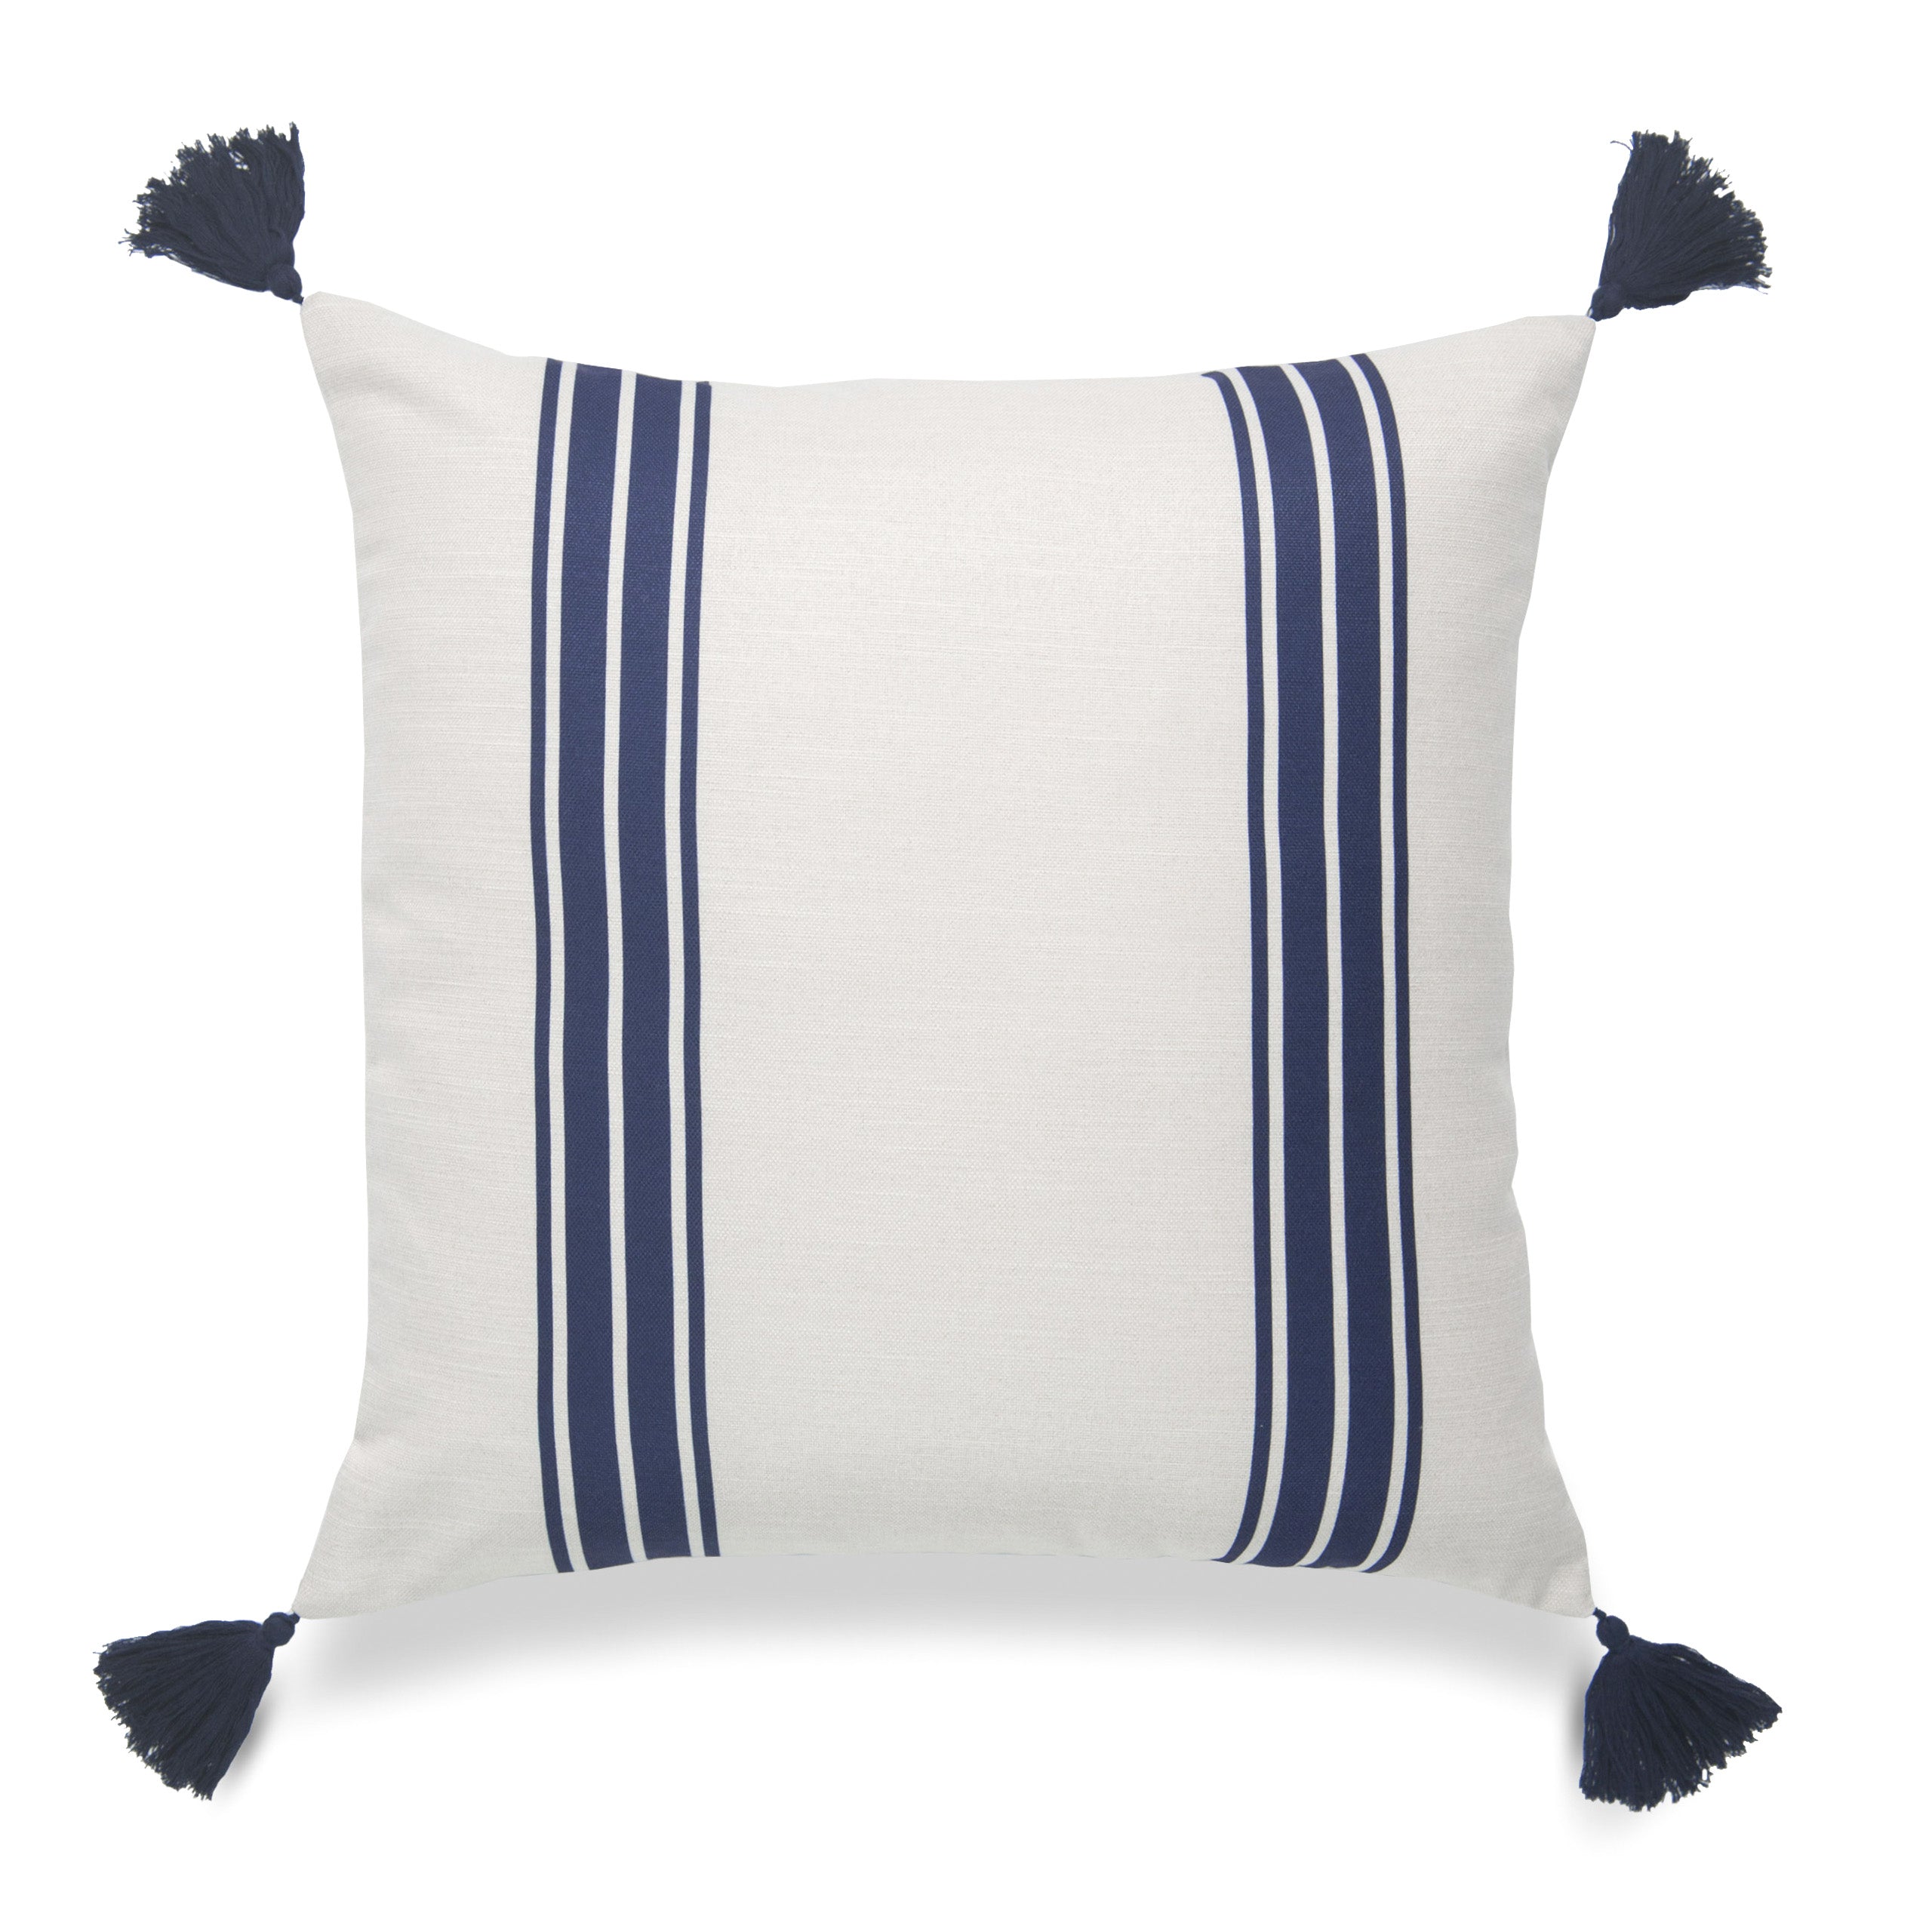 Coastal Indoor Outdoor Pillow Cover, Aviv, Striped Tassel, Navy Blue, 20"x20"-0